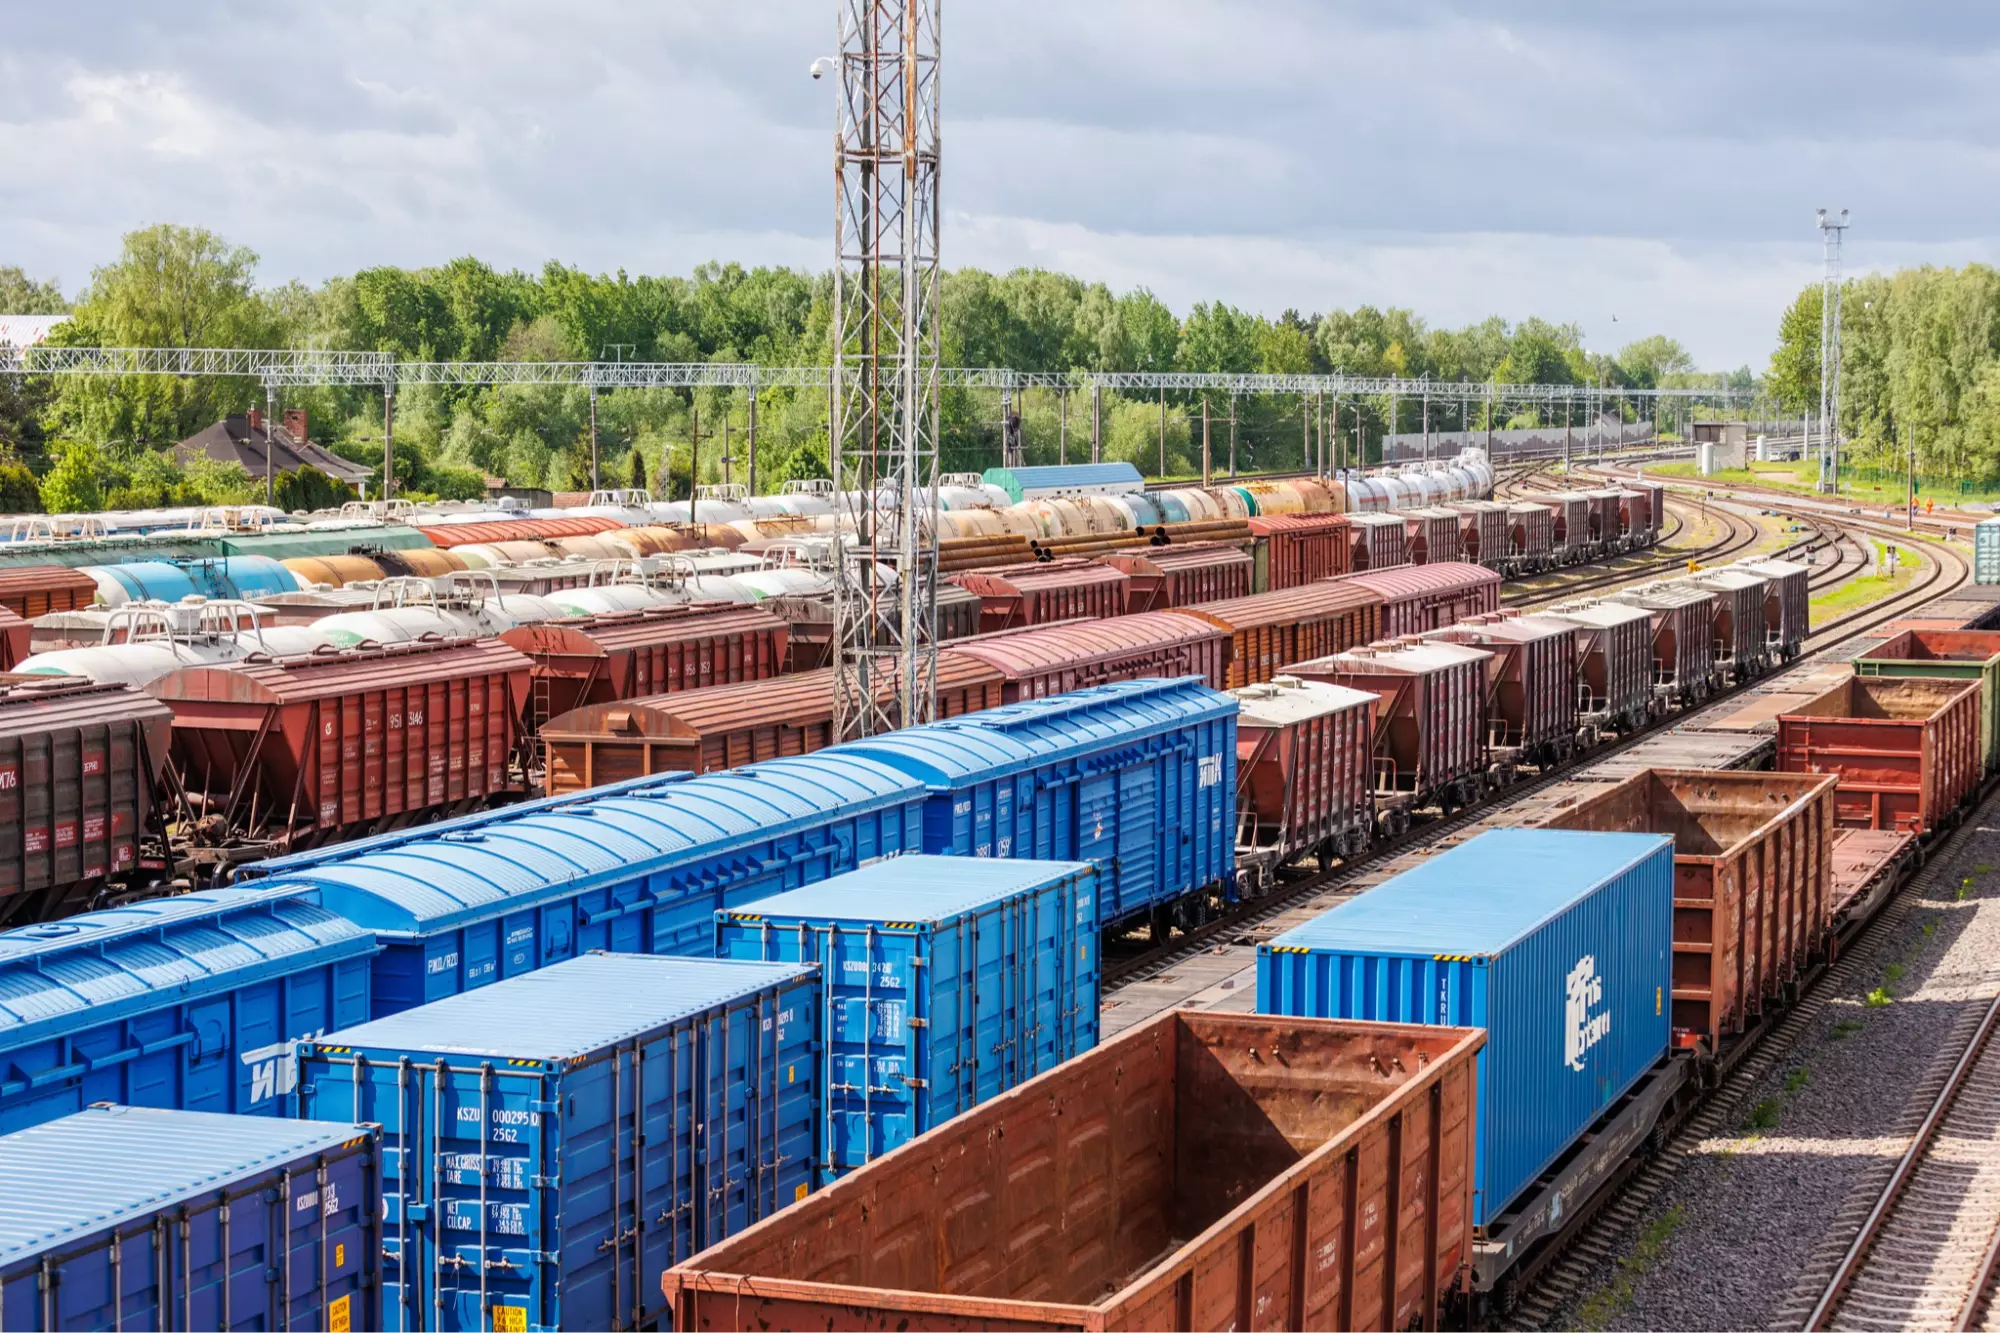 „Lietuvos geležinkeliai“ patvirtino: Kaliningradas jau išnaudojo kai kurių prekių tranzito limitus